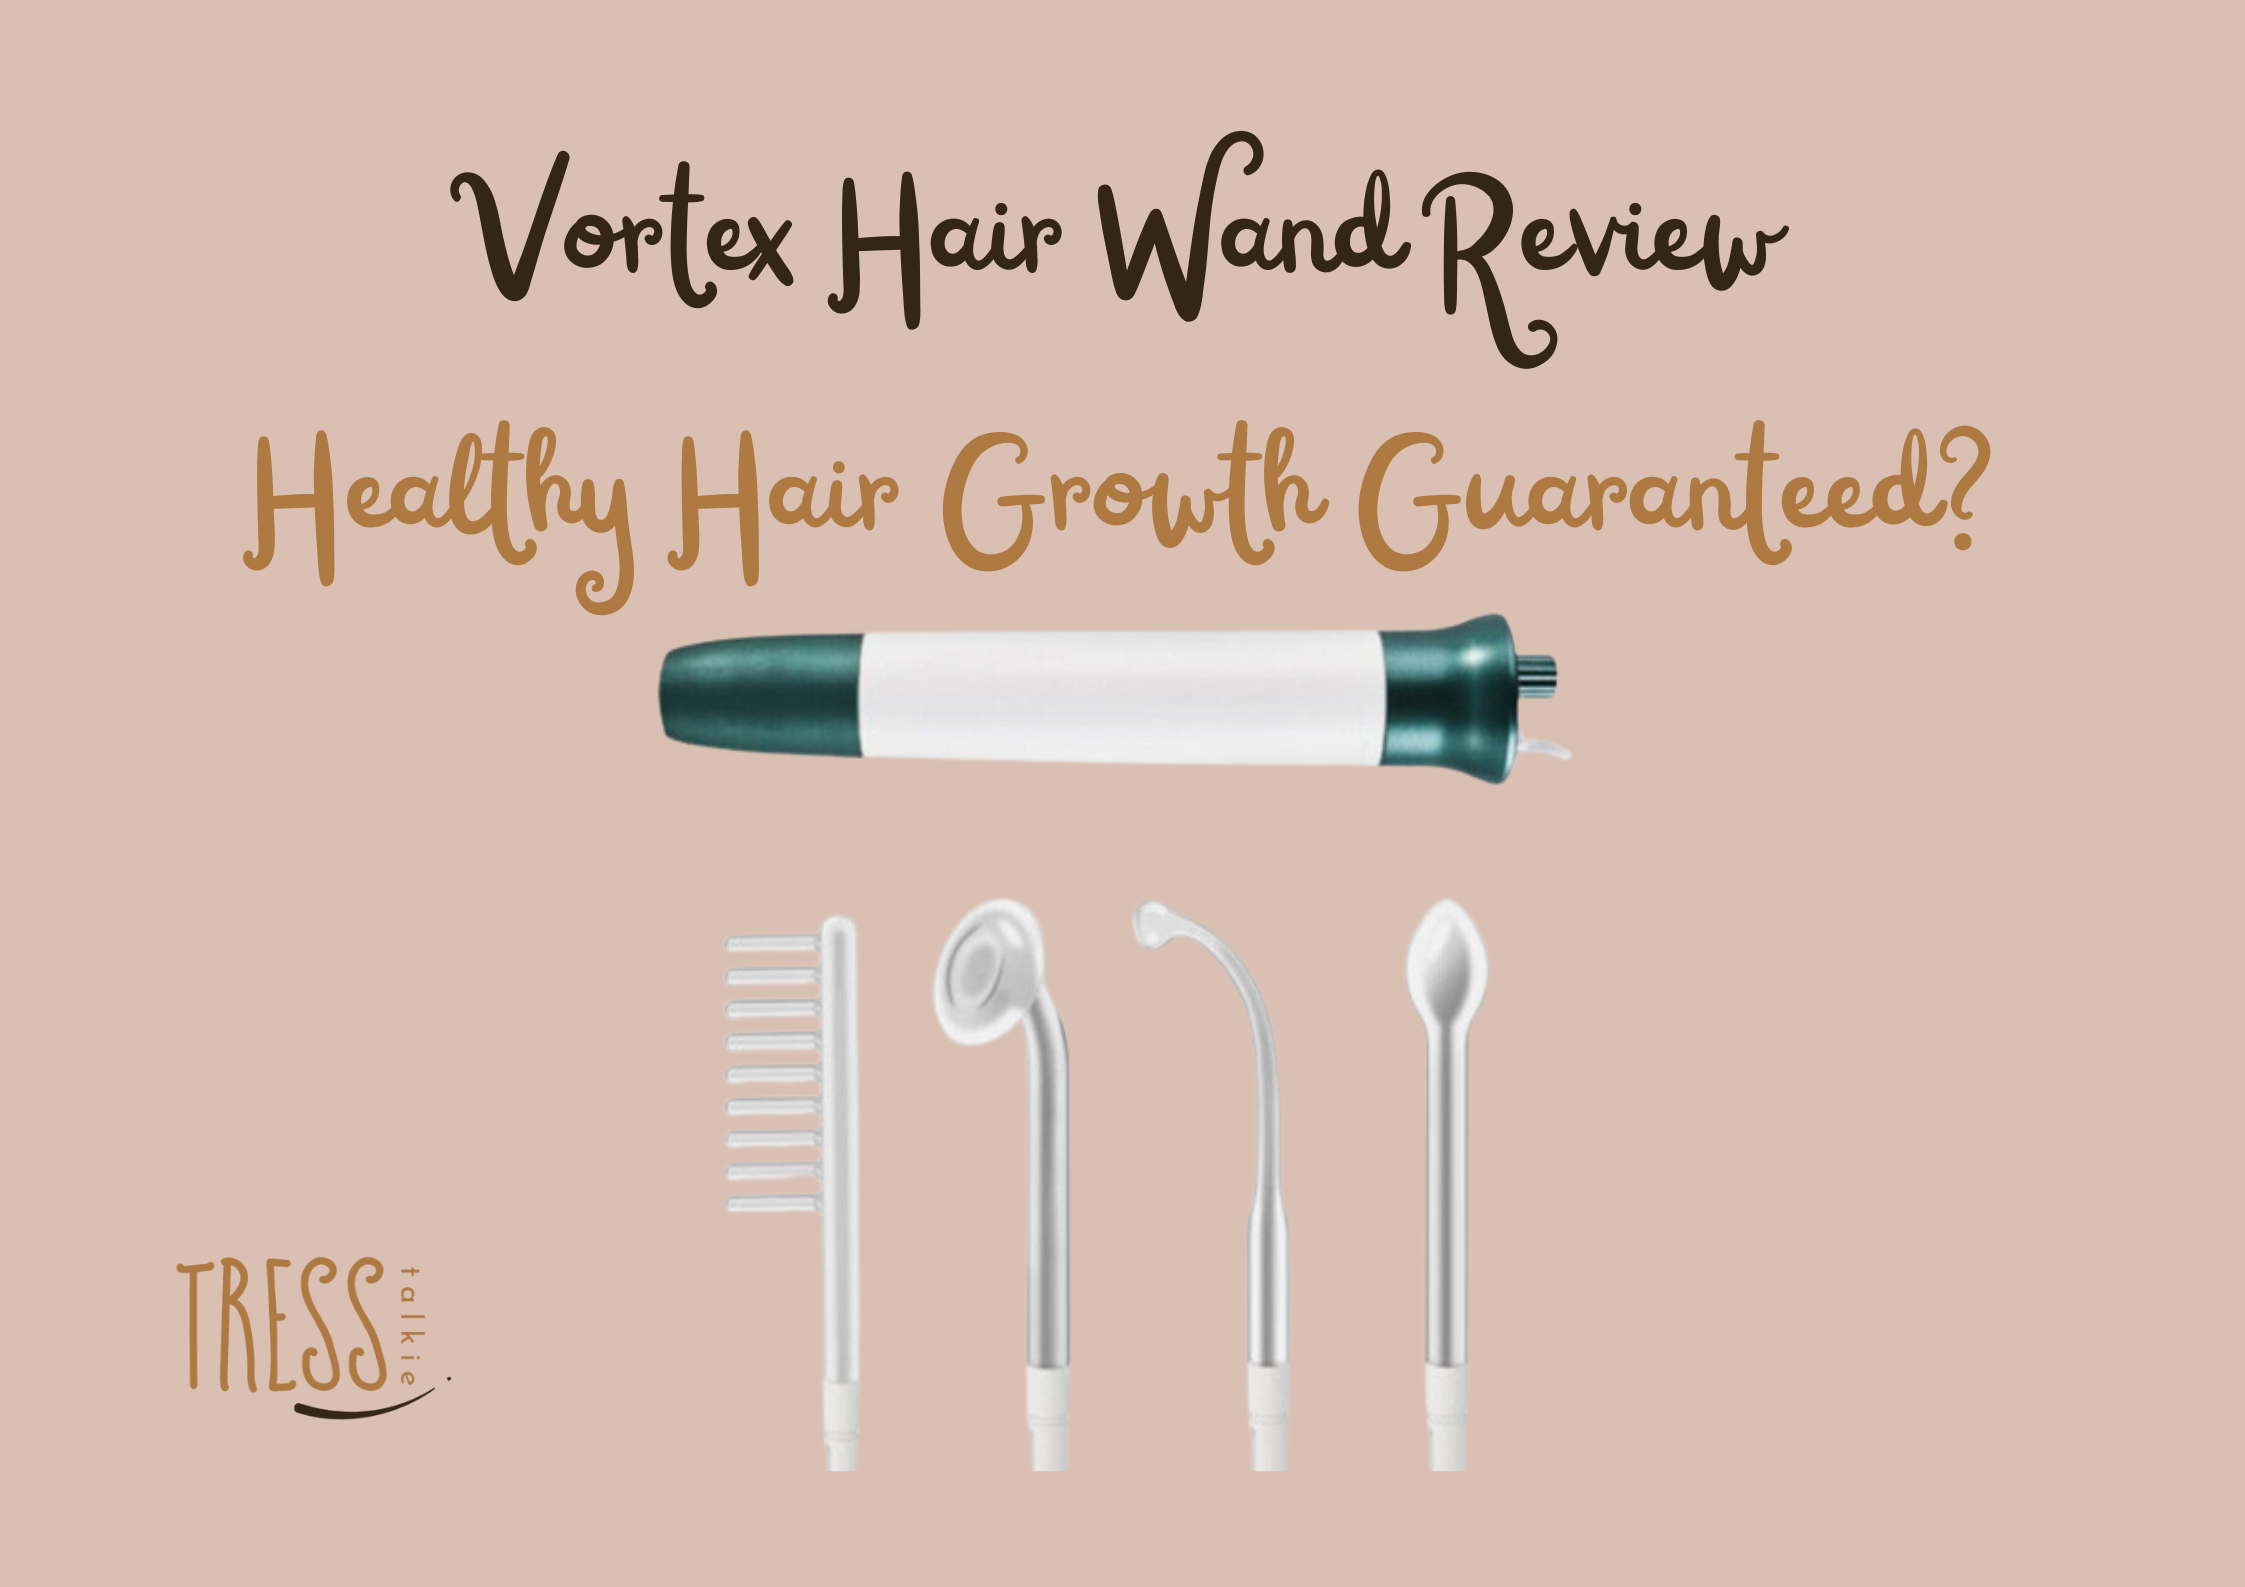 Vortex Hair Wand Reviews